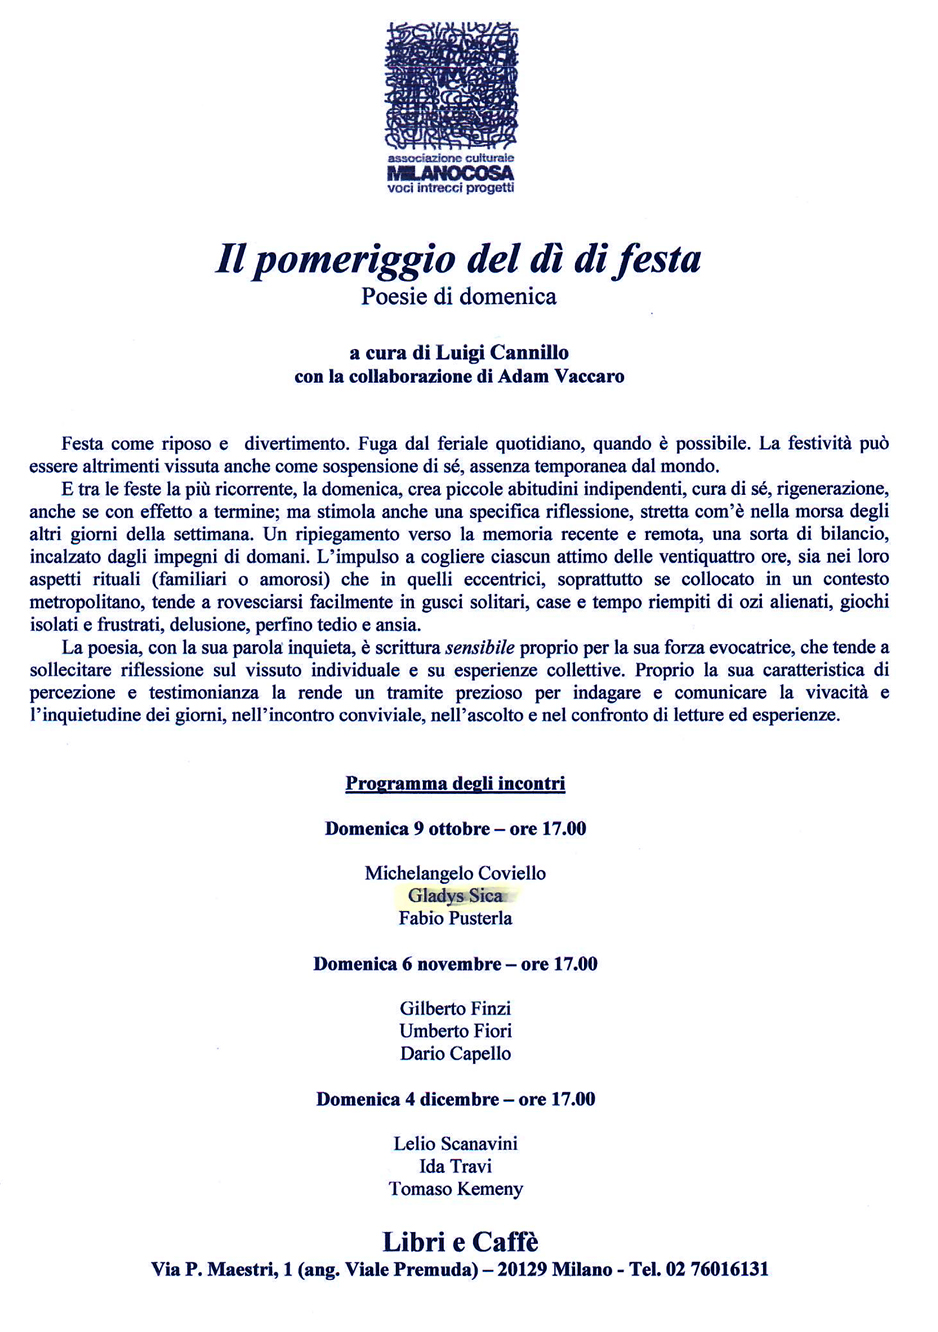 2005 - Incontri di Poesia, a cura di Luigi Cannillo: Gladys Sica, M. Covielllo, F. Pusterla, Lelio Scanavini, Tomaso Kemeny, ecc. Libri e Caffè, Milano.